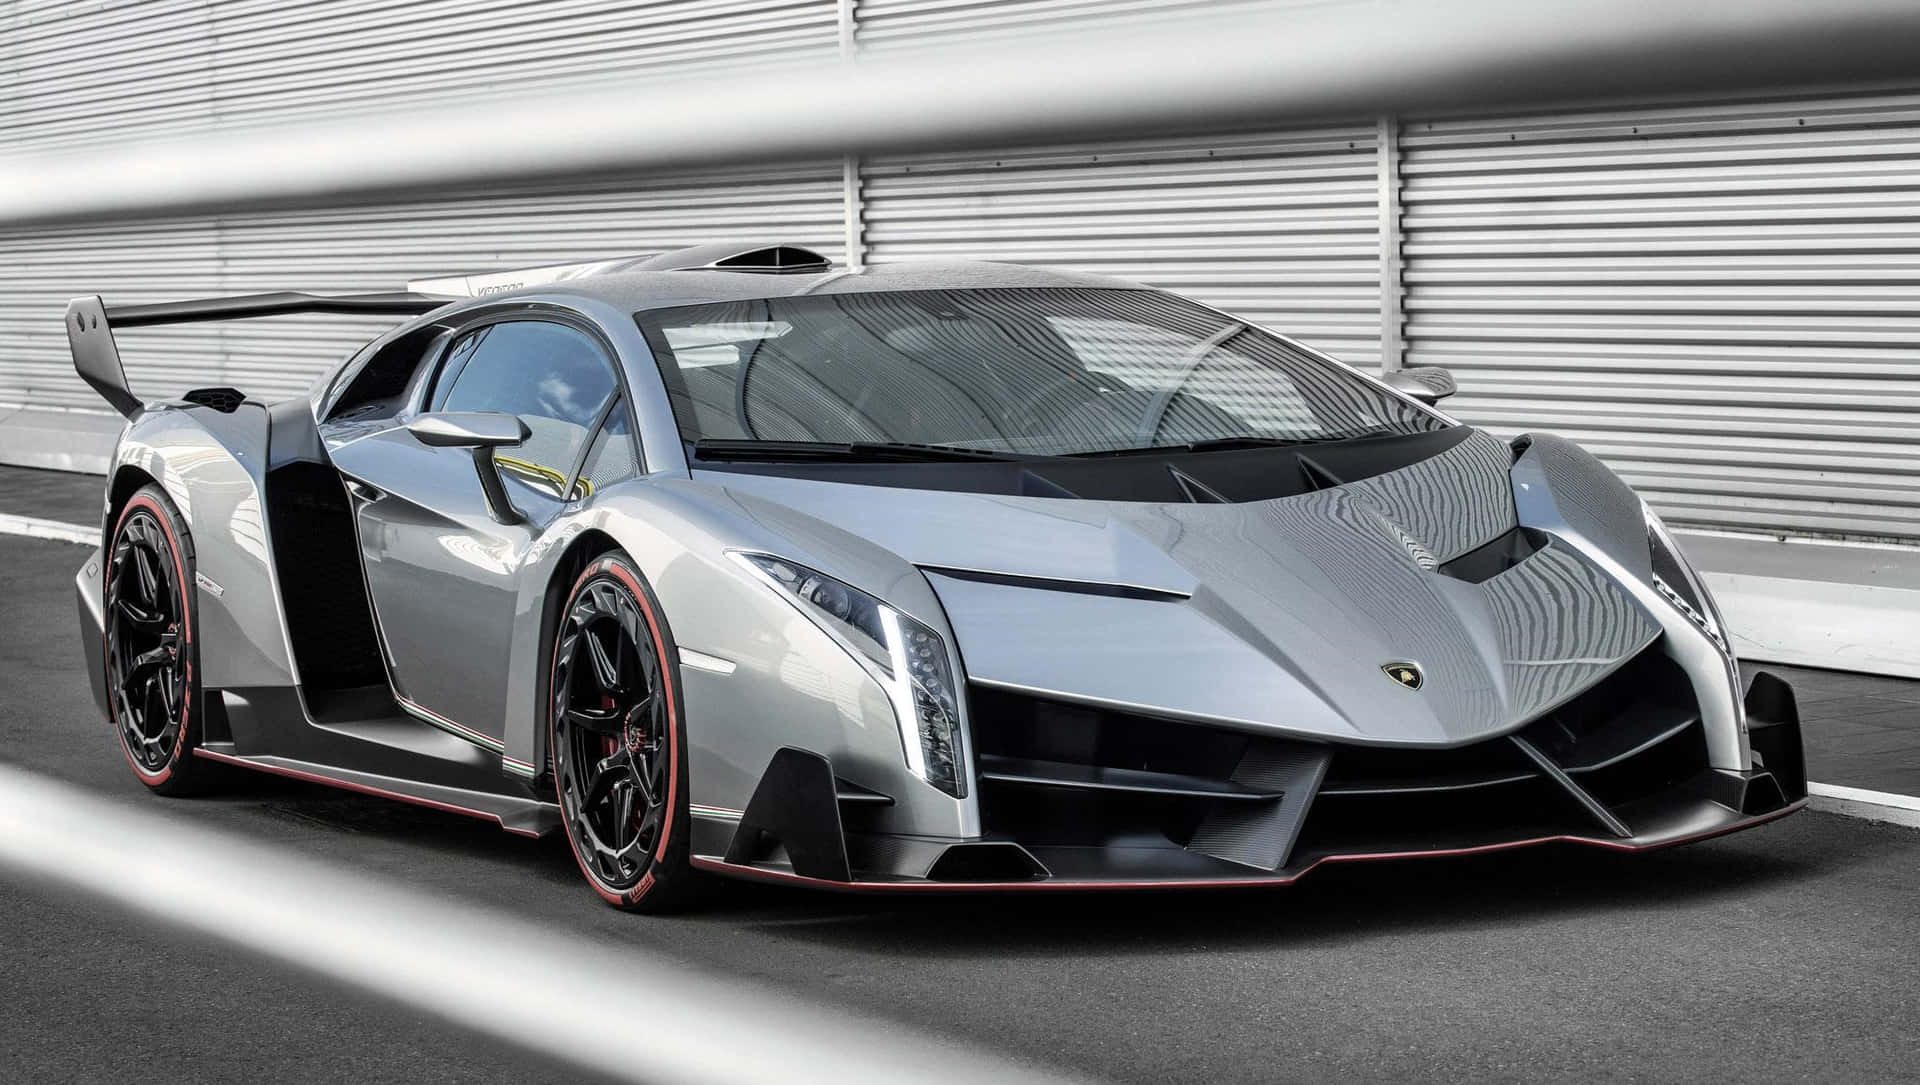 Sleek and Powerful Lamborghini Veneno Wallpaper